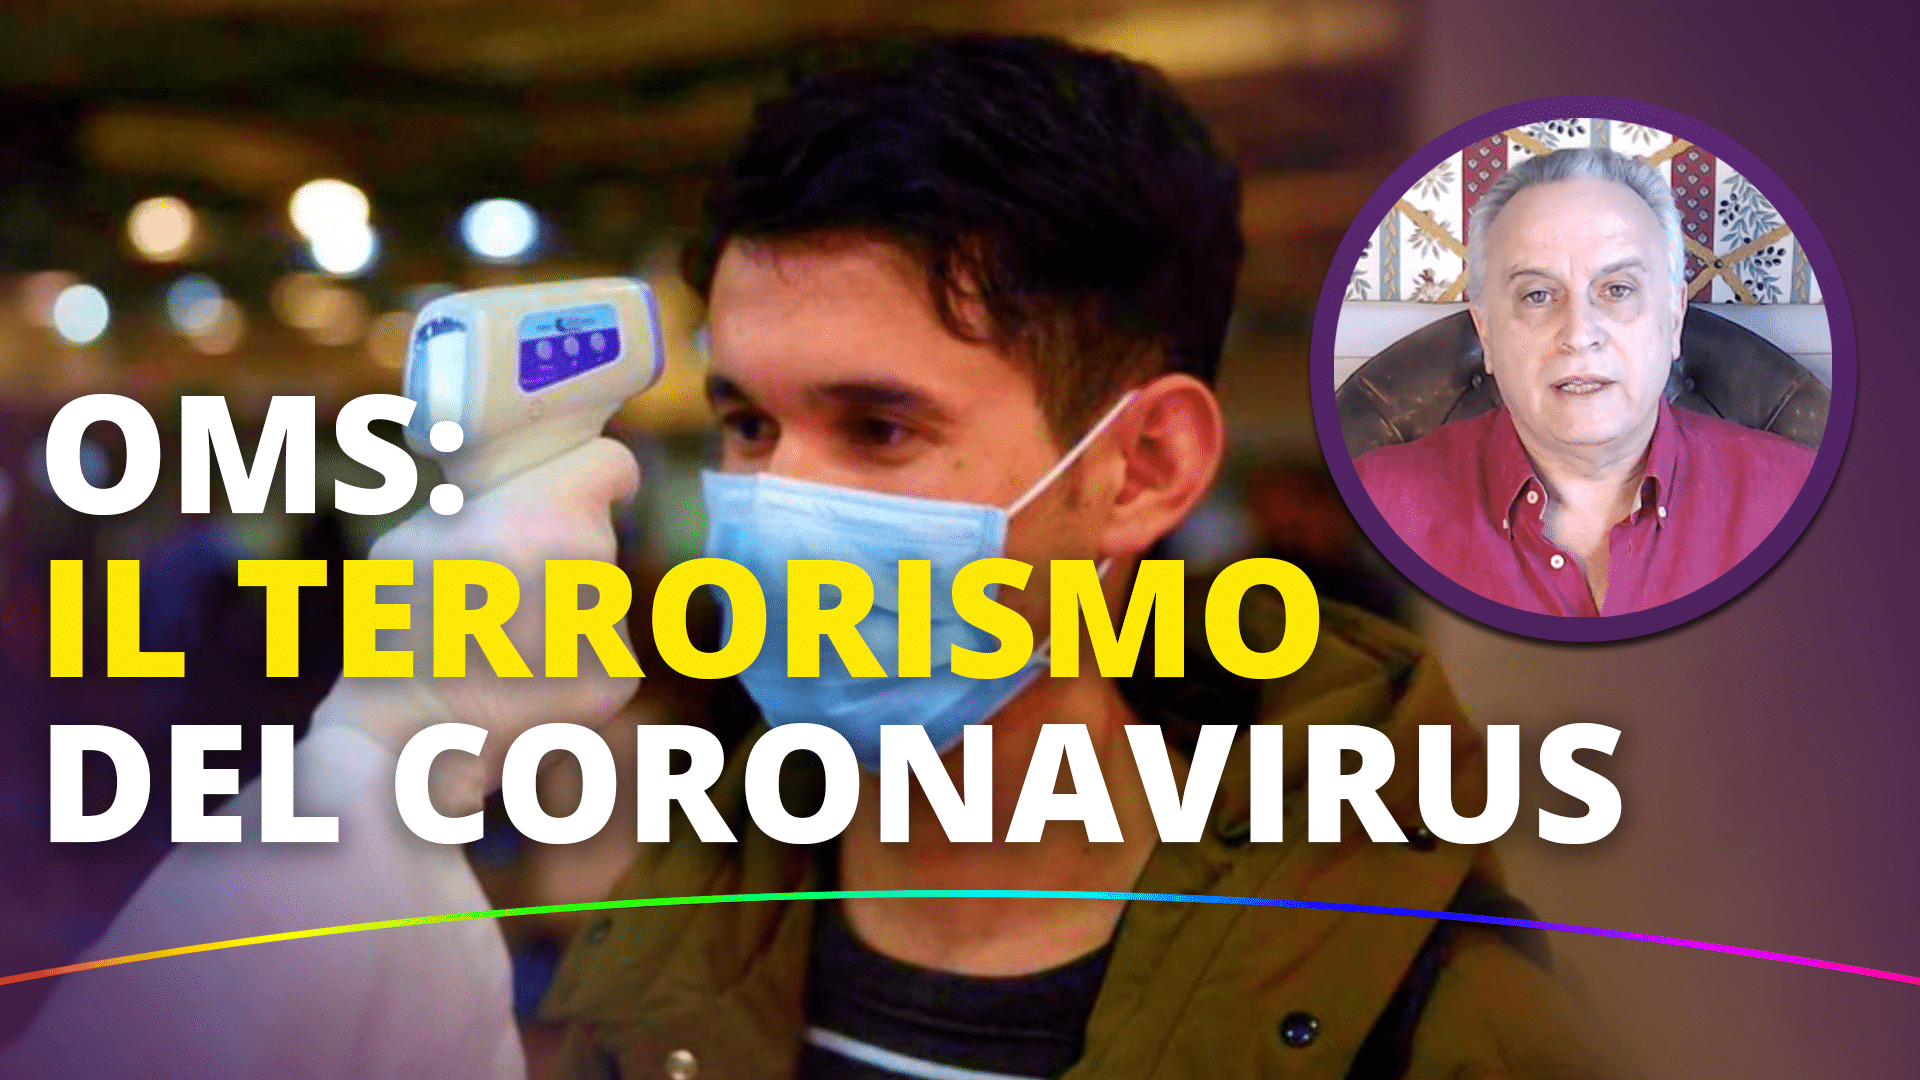 OMS: Il terrorismo del coronavirus